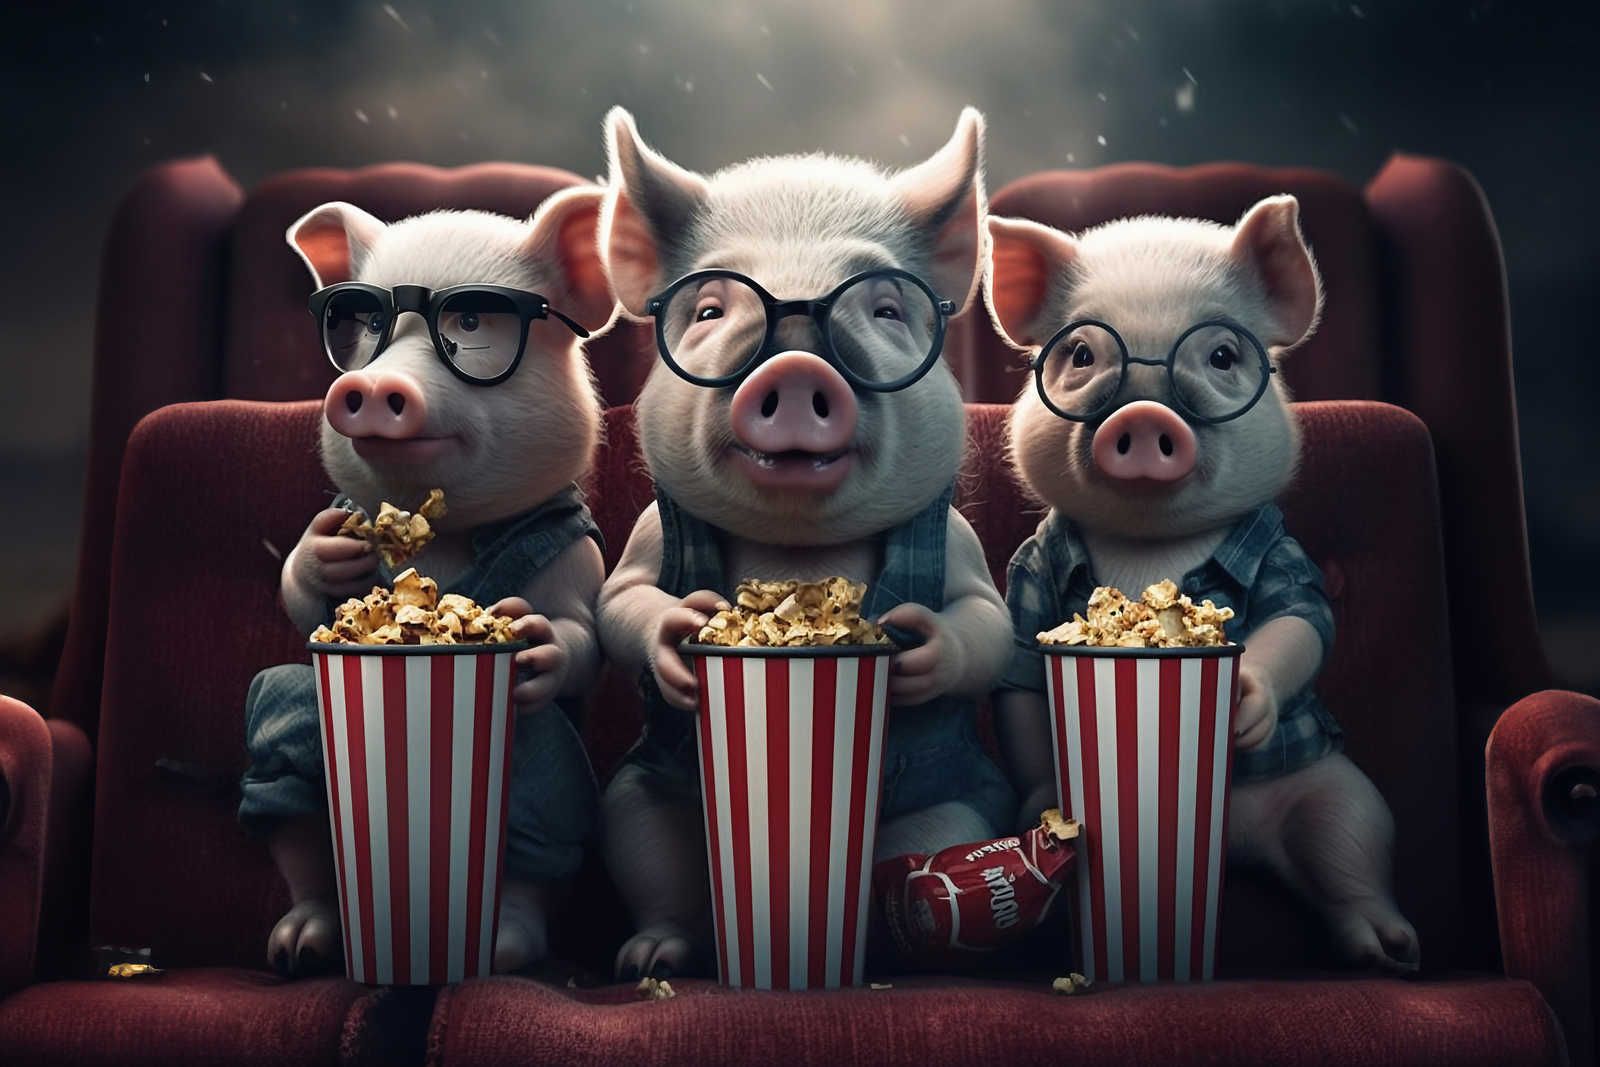             Toile KI »popcorn pigs« - 90 cm x 60 cm
        